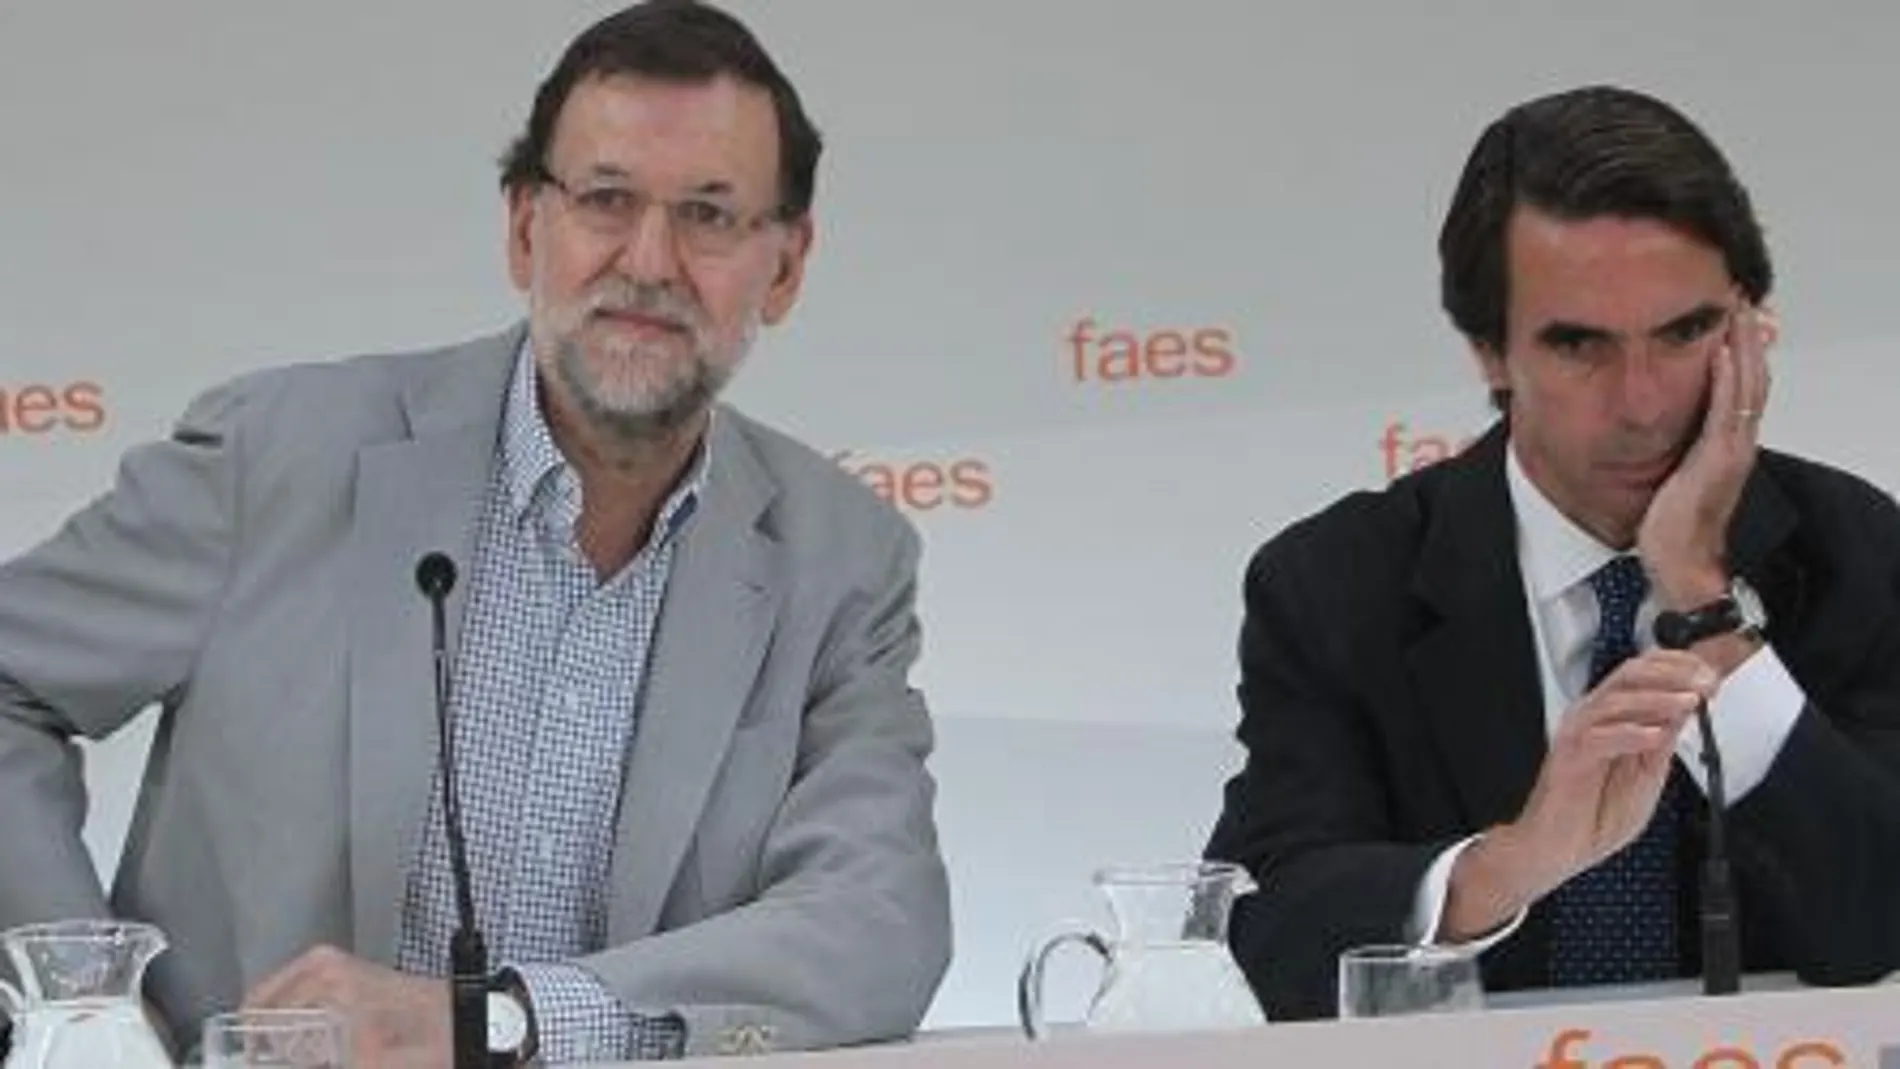 Rajoy y Aznar en la clausura del campus Faes